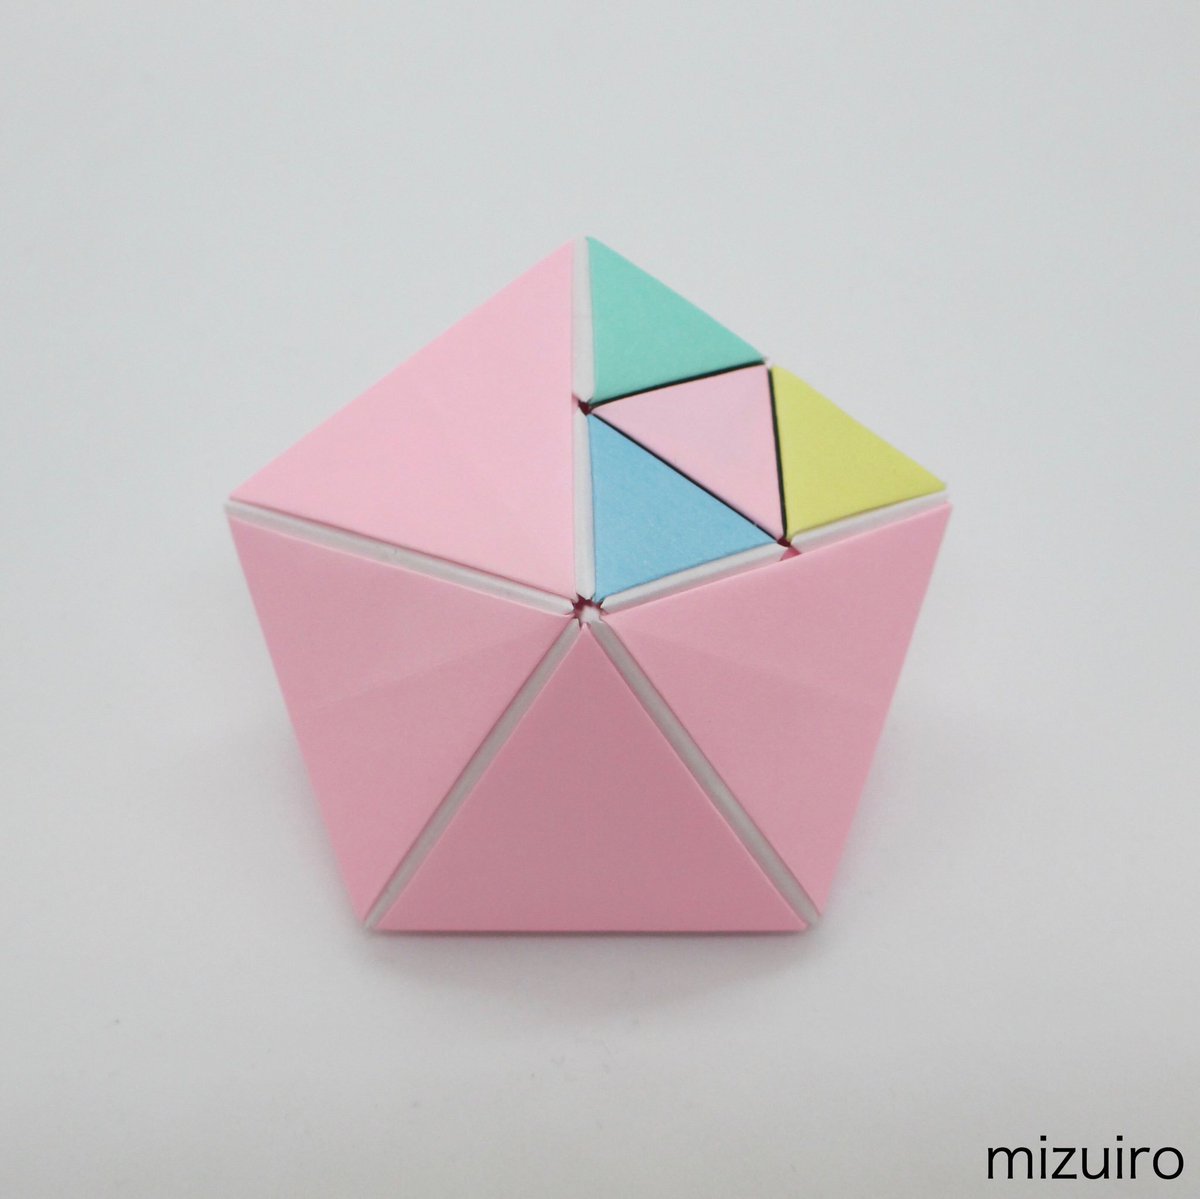 Mizuiro 双五角錐は五角錐が2つ貼り付いた可愛い形です いつもの正二十面体と同じサイズの三角形で作っています 後ろ側は背中ということで無地に パステルカラーが可愛いですね っていうか結弦さん可愛いぃぁあぁ O 羽生結弦折り紙 羽生